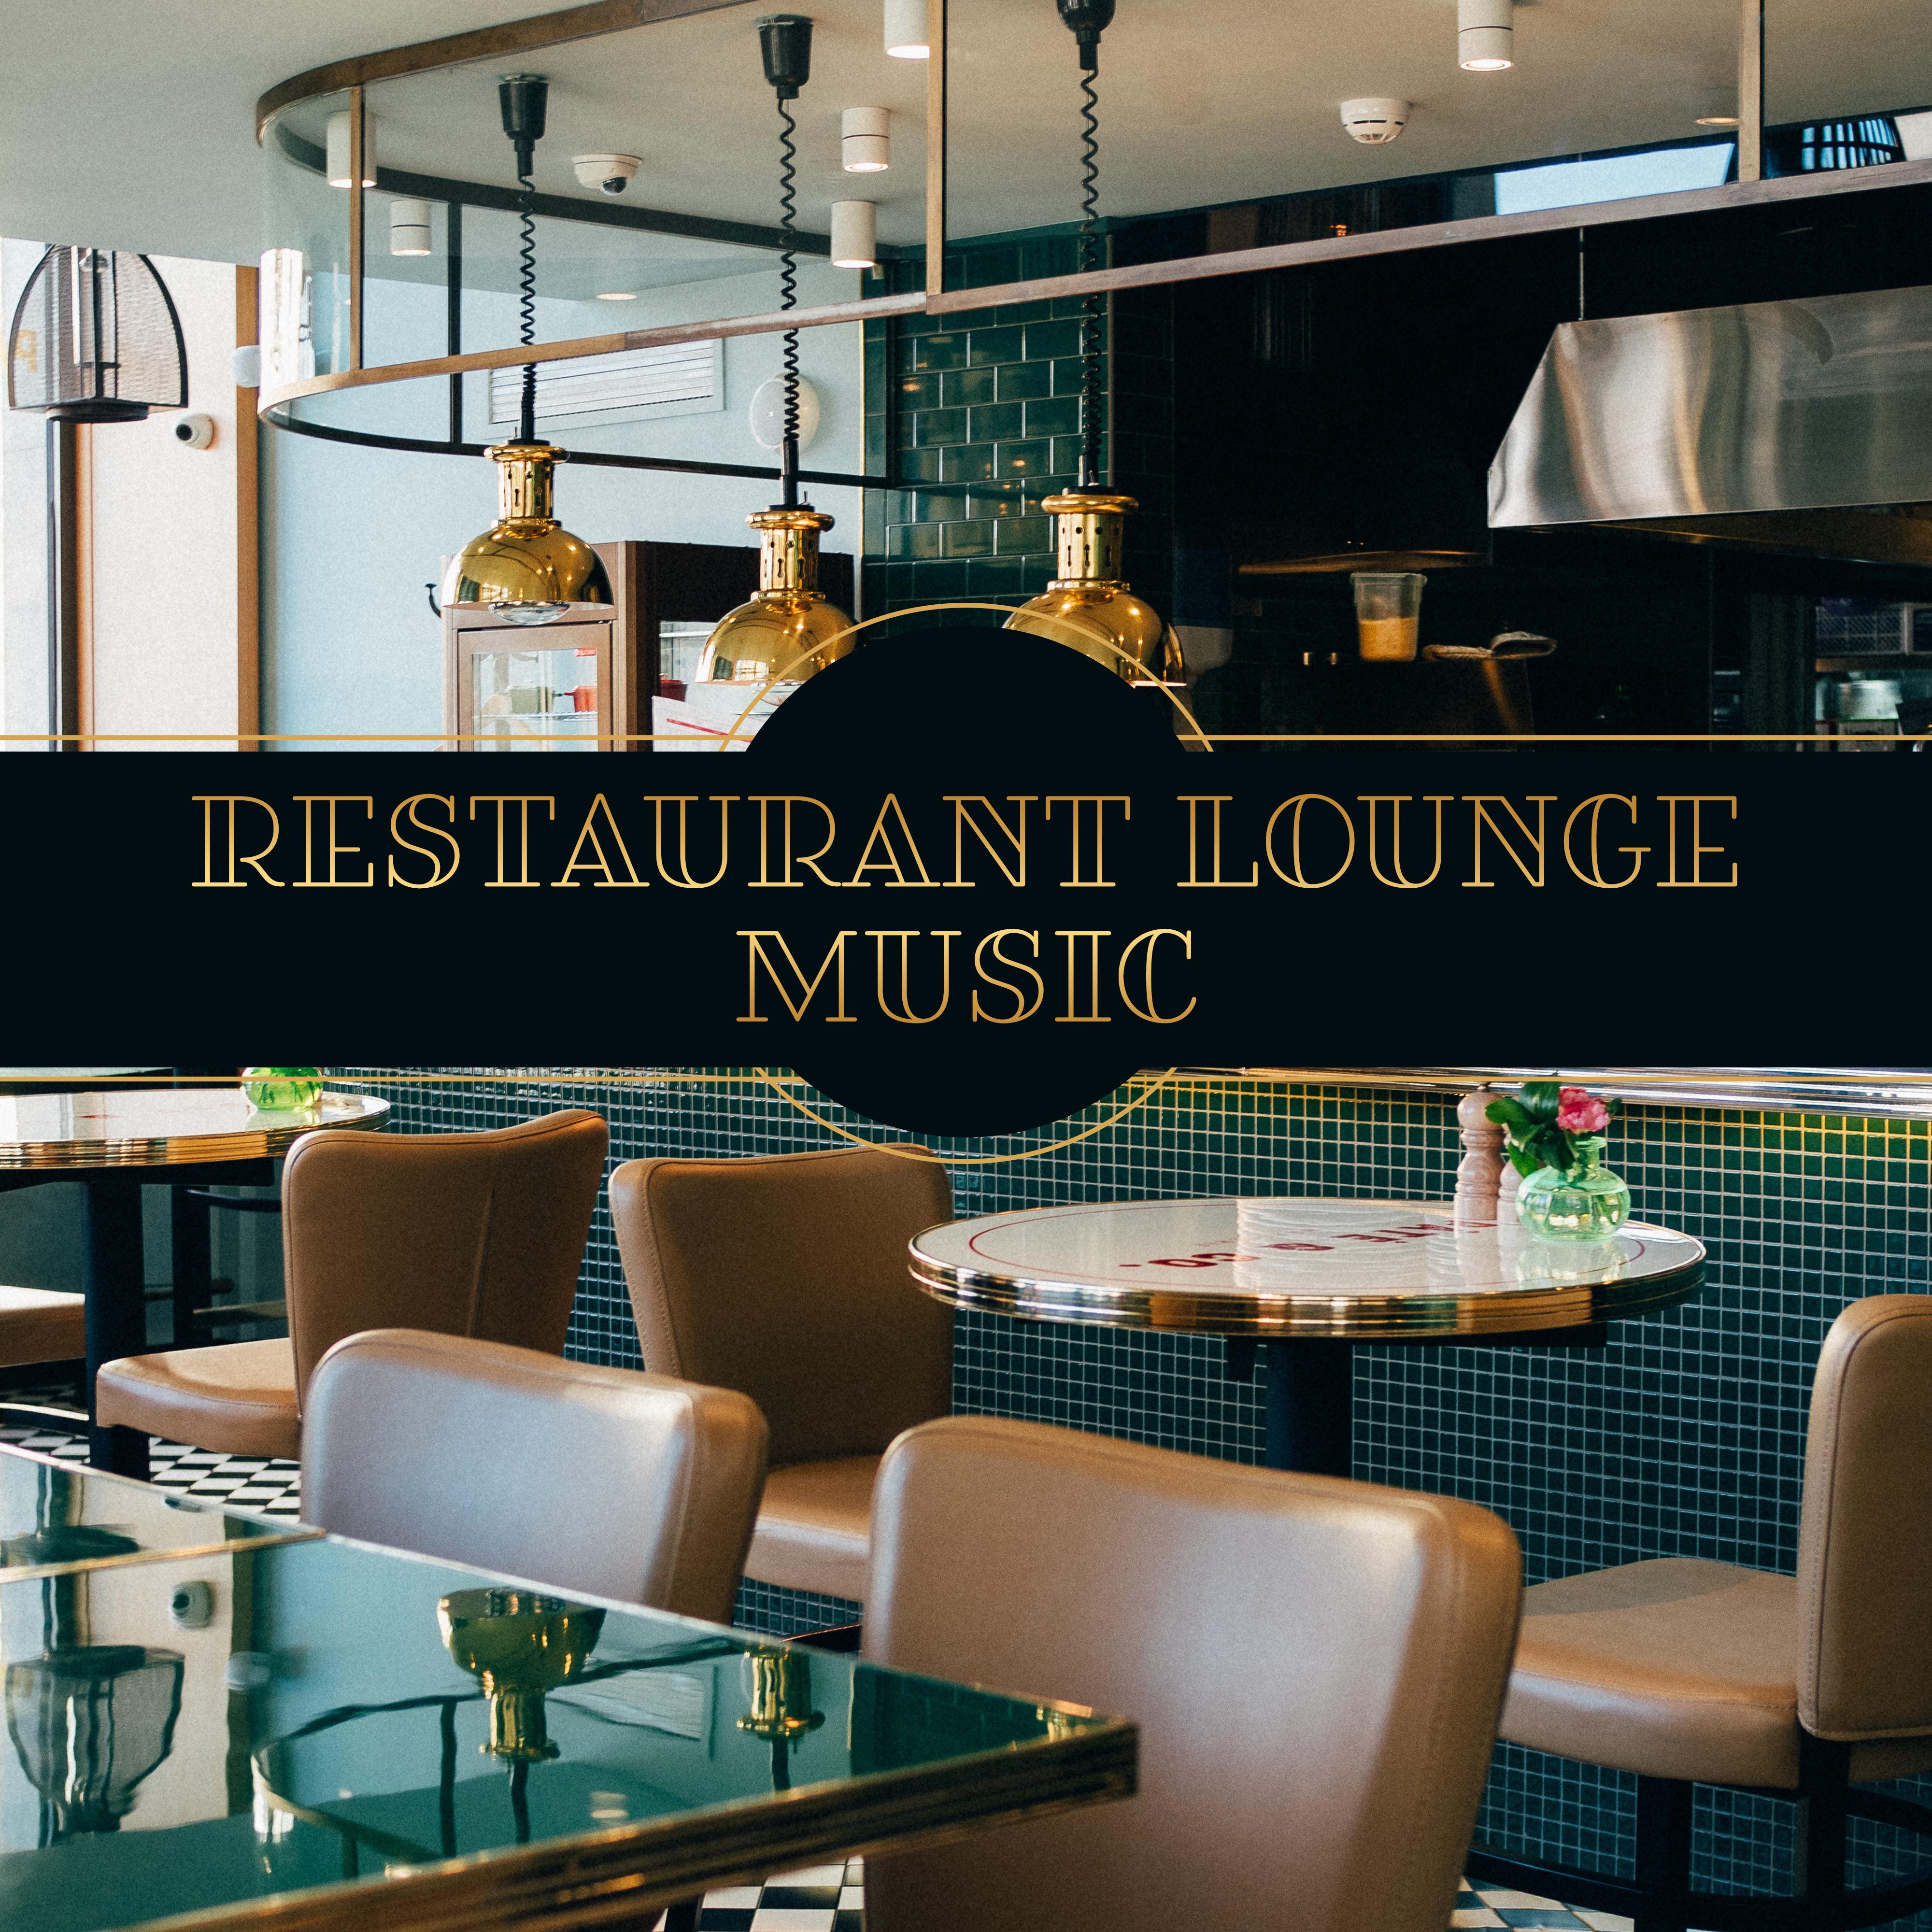 Restaurant Lounge Music  Instrumental Jazz Music Ambient